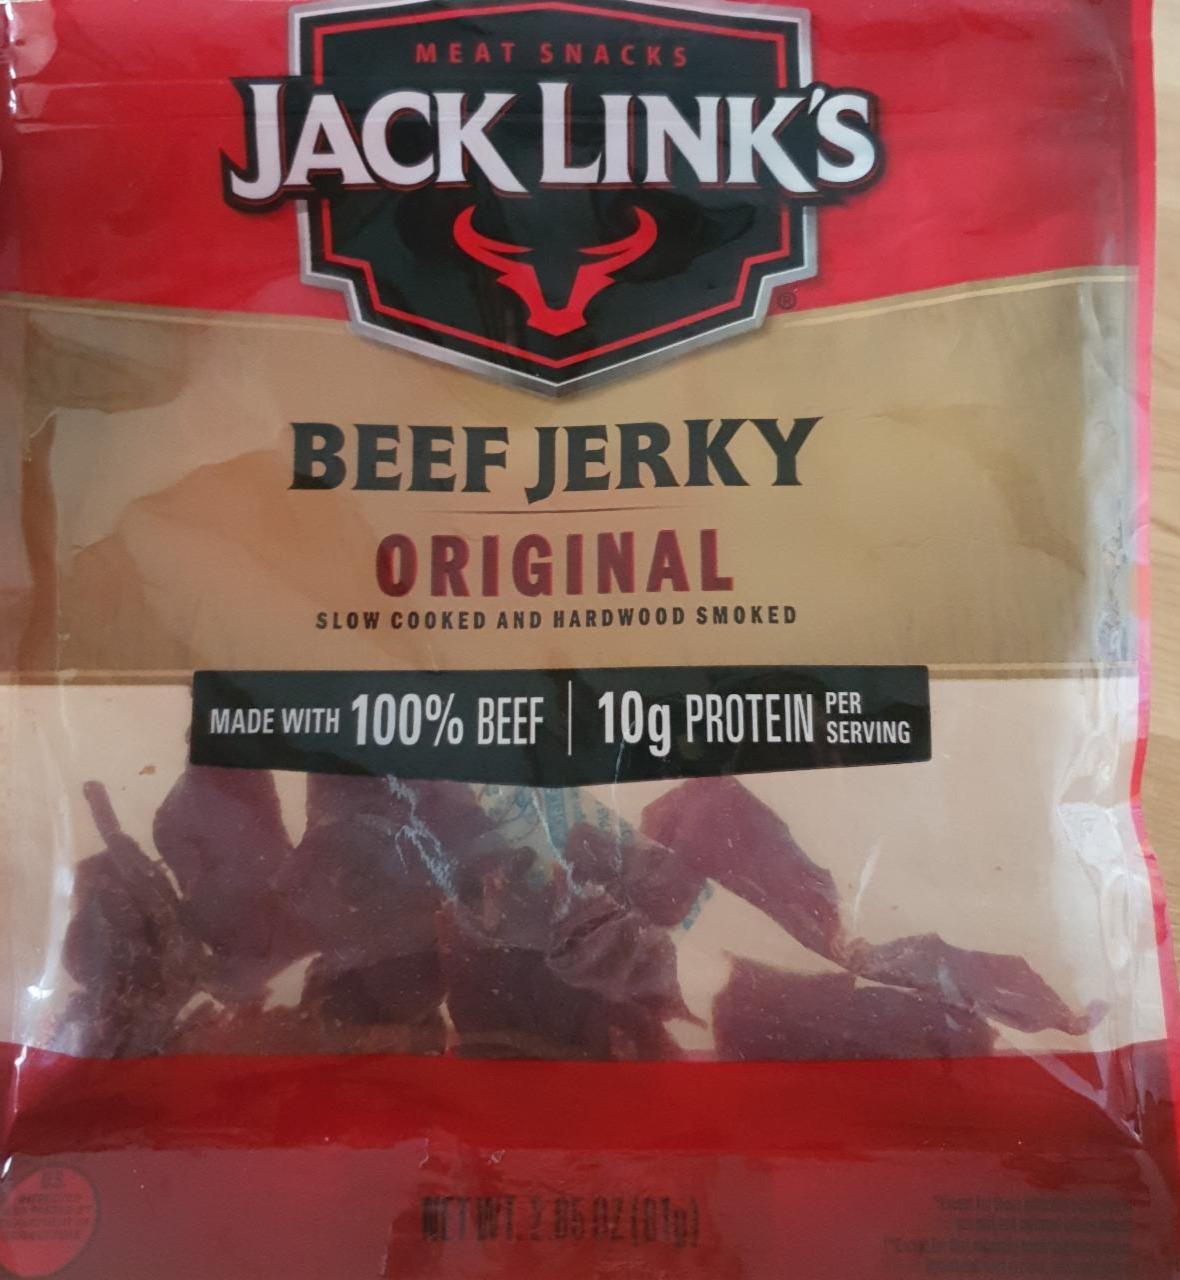 Fotografie - Meat snacks beef jerky original Jack Link's